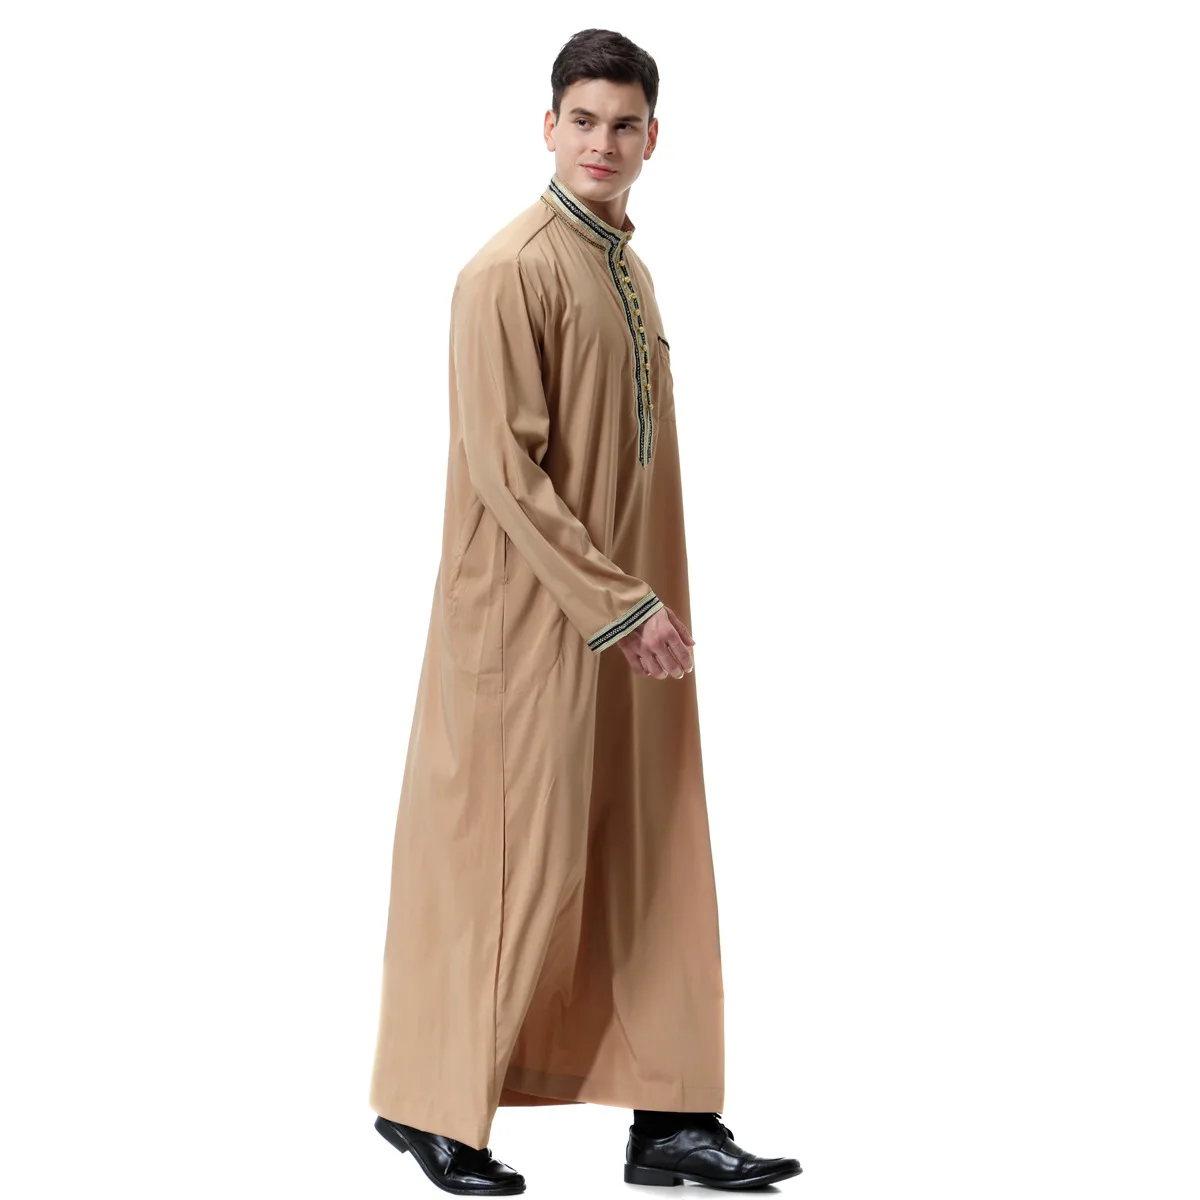 Мусульманский мужской иубба Тауб ислам ic аппликация на одежду длинный халат Турция Саудовский мусульман одежда Кафтан абайя ислам Дубай ар... от AliExpress WW